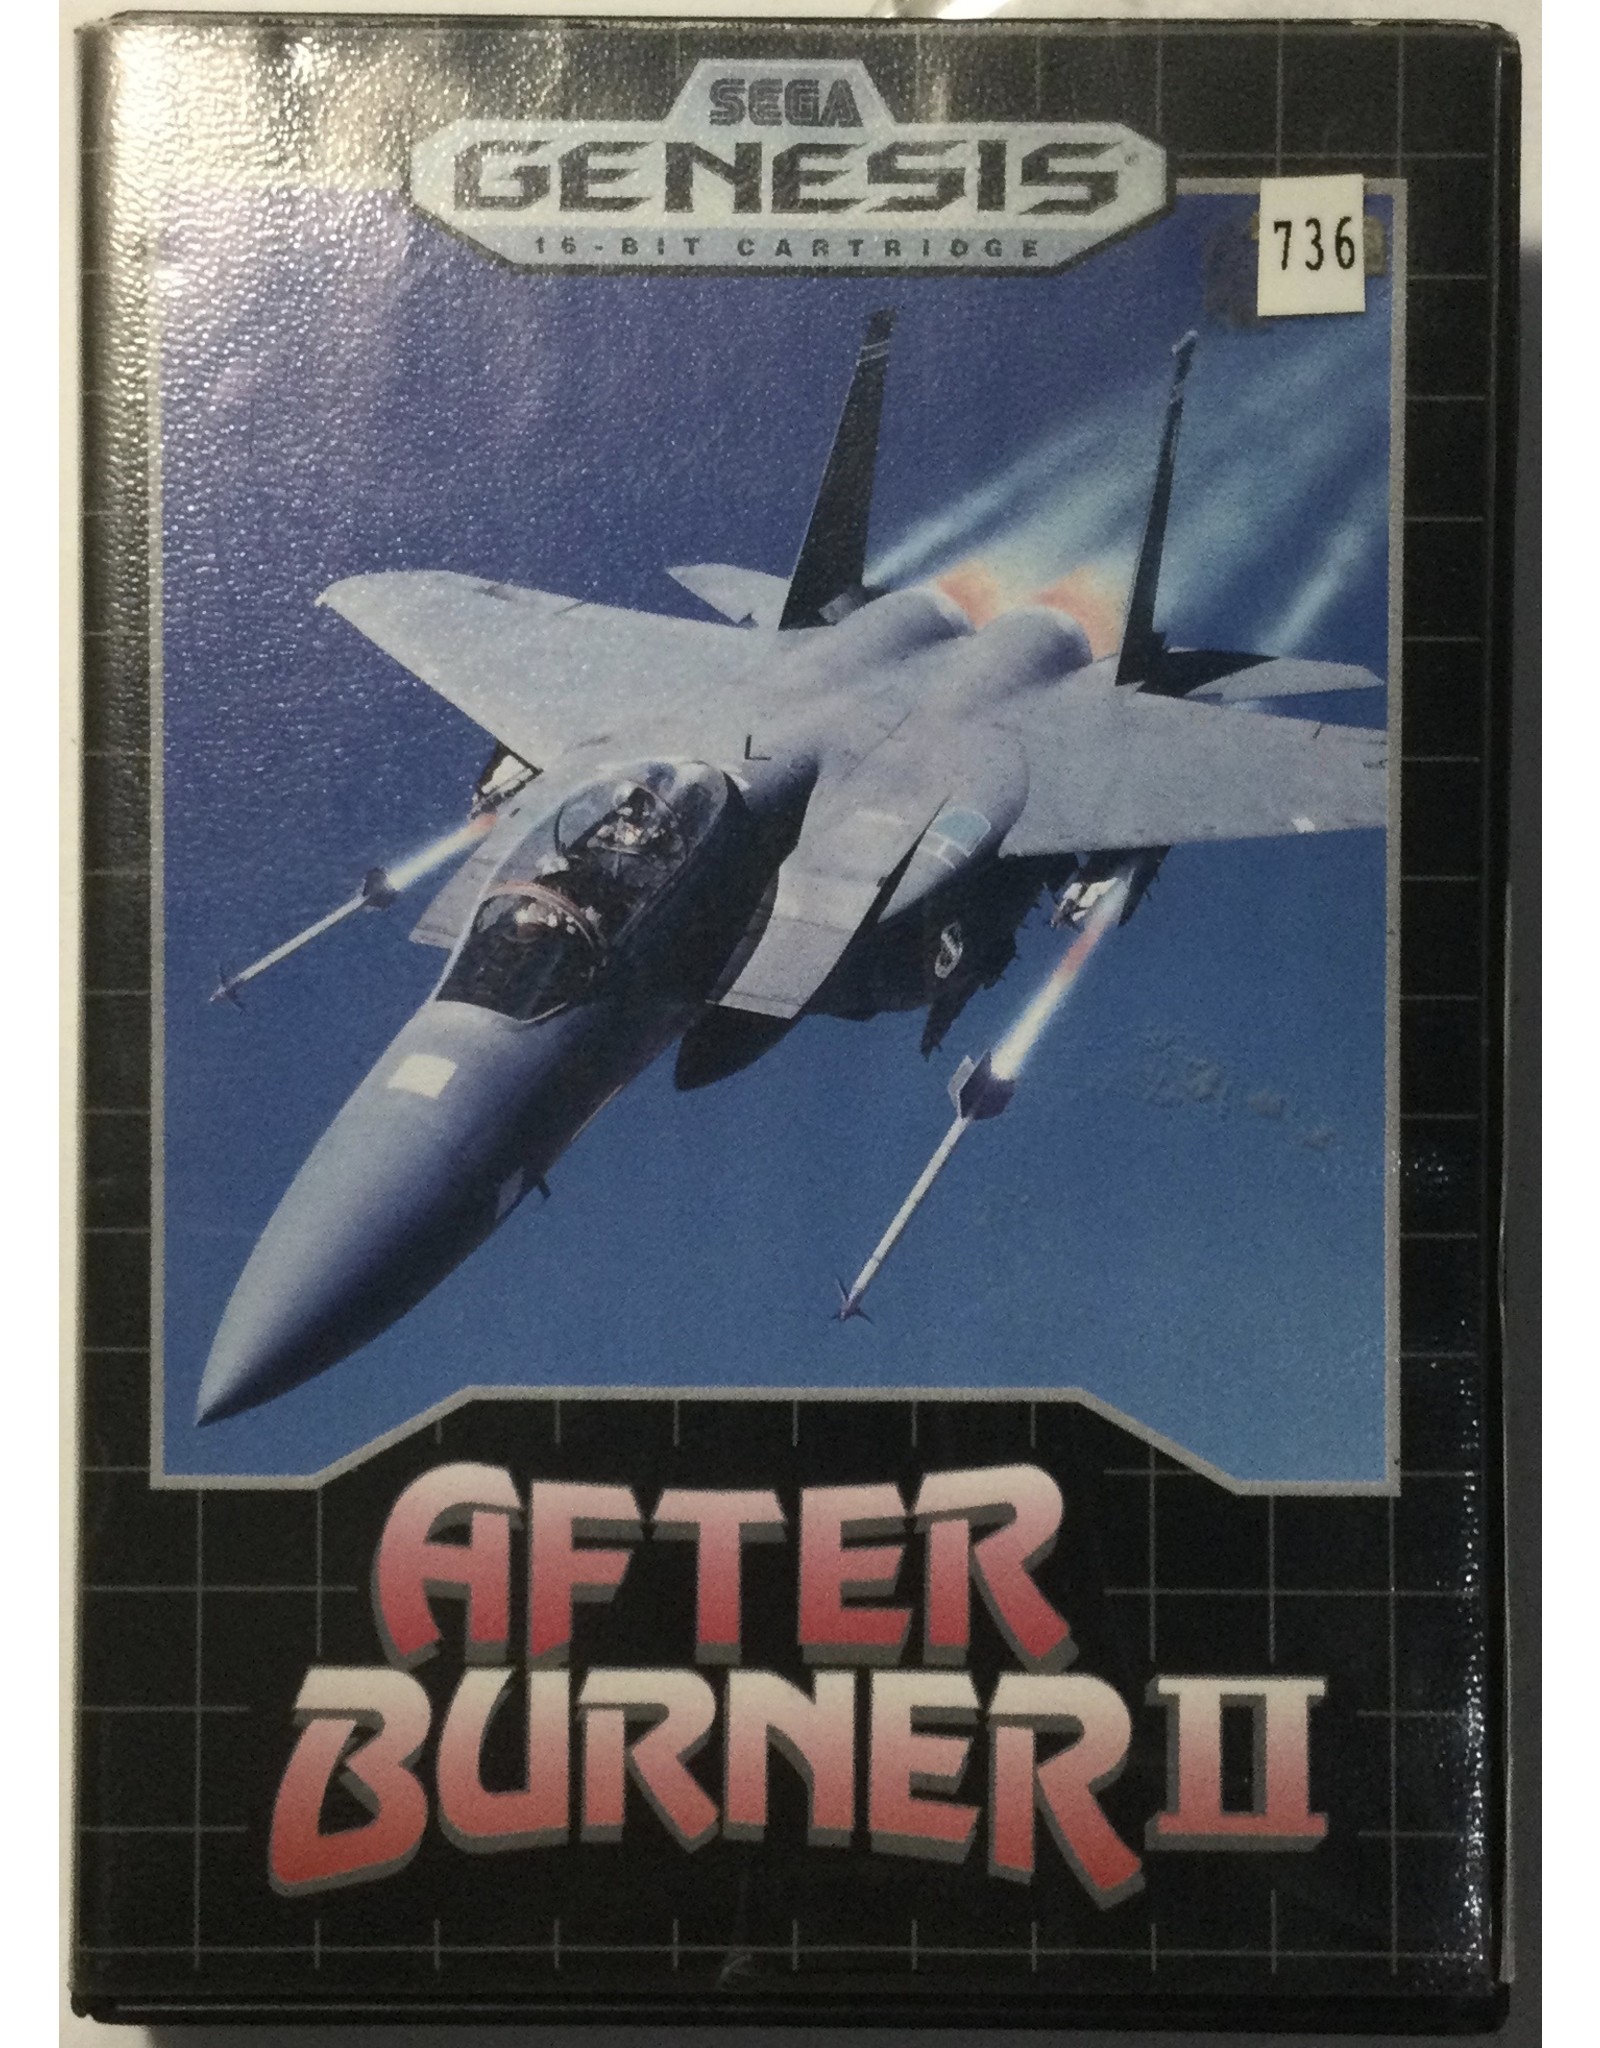 After Burner II for Sega Genesis - CIB